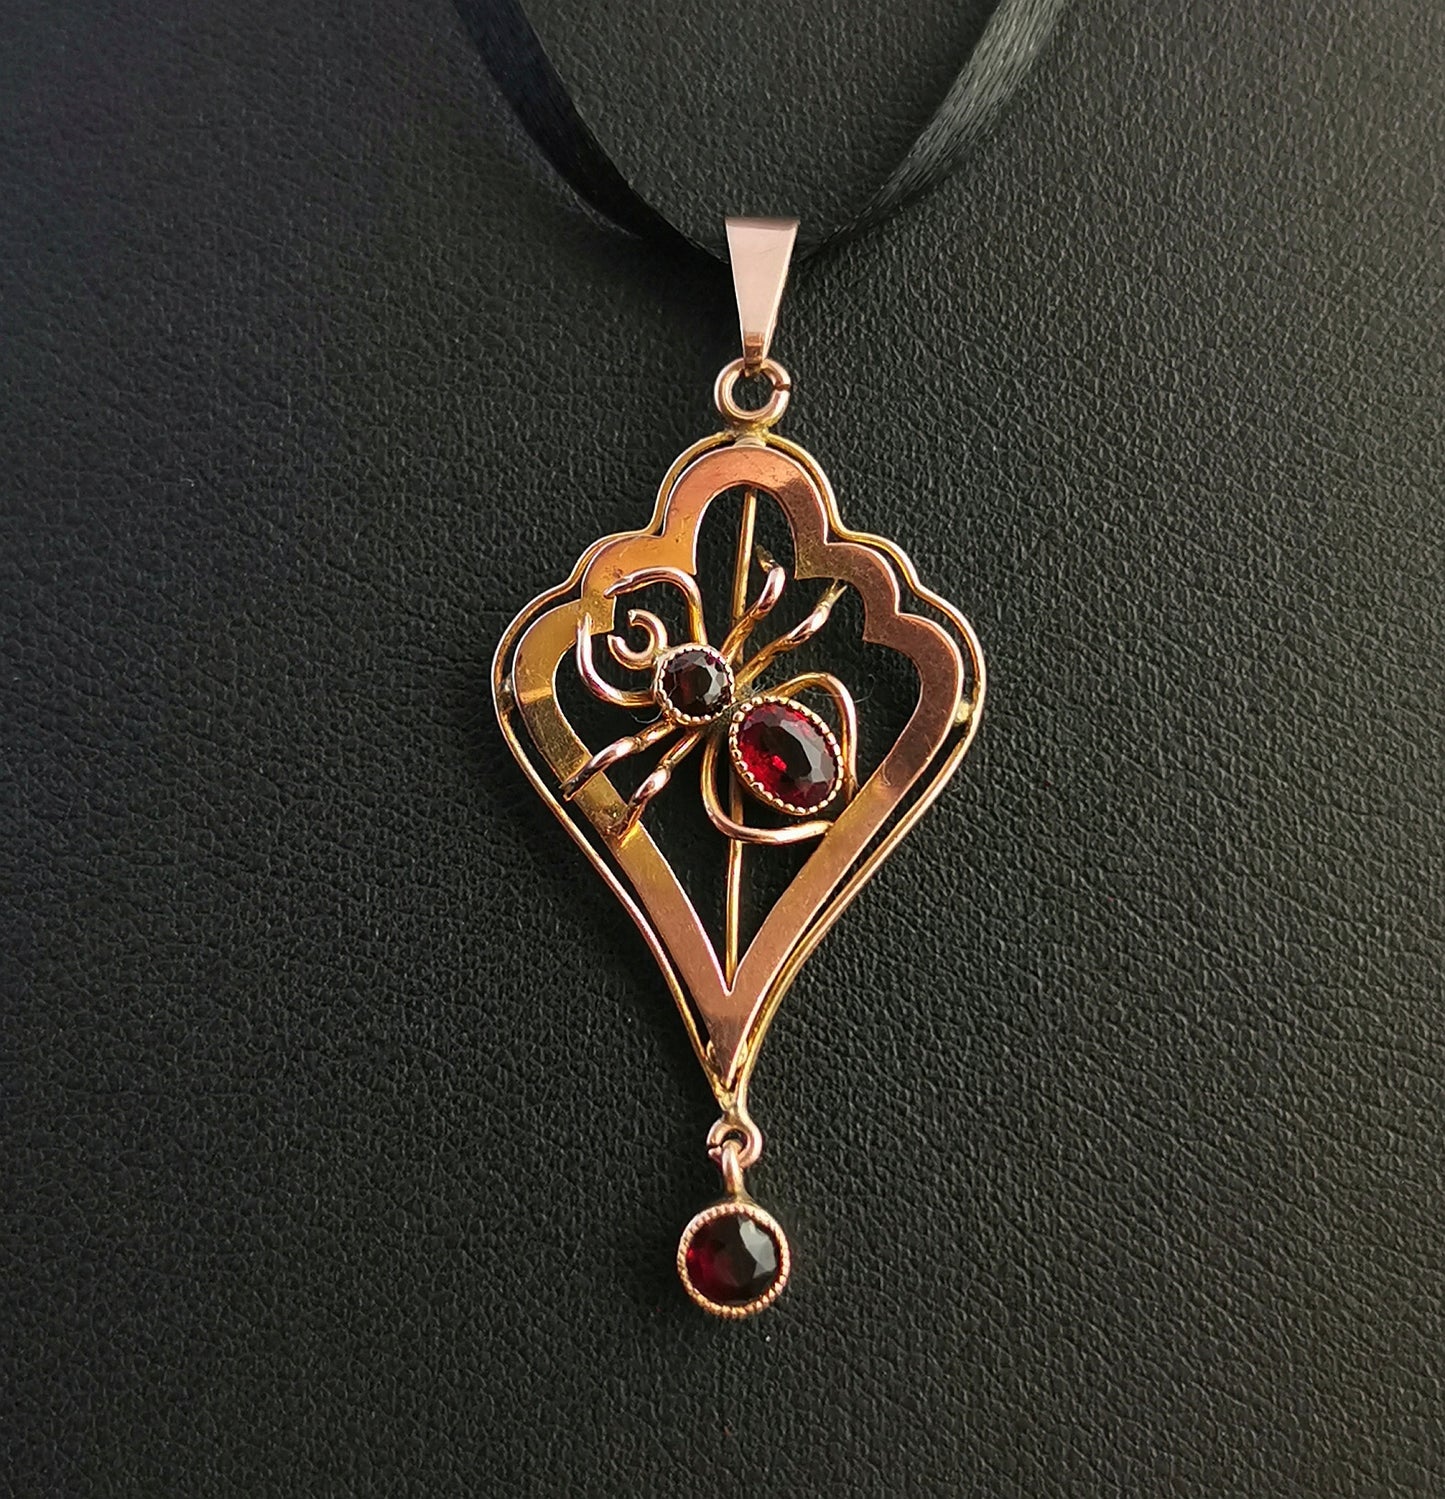 Antique 9ct gold Spider pendant, lavalier, Art Nouveau